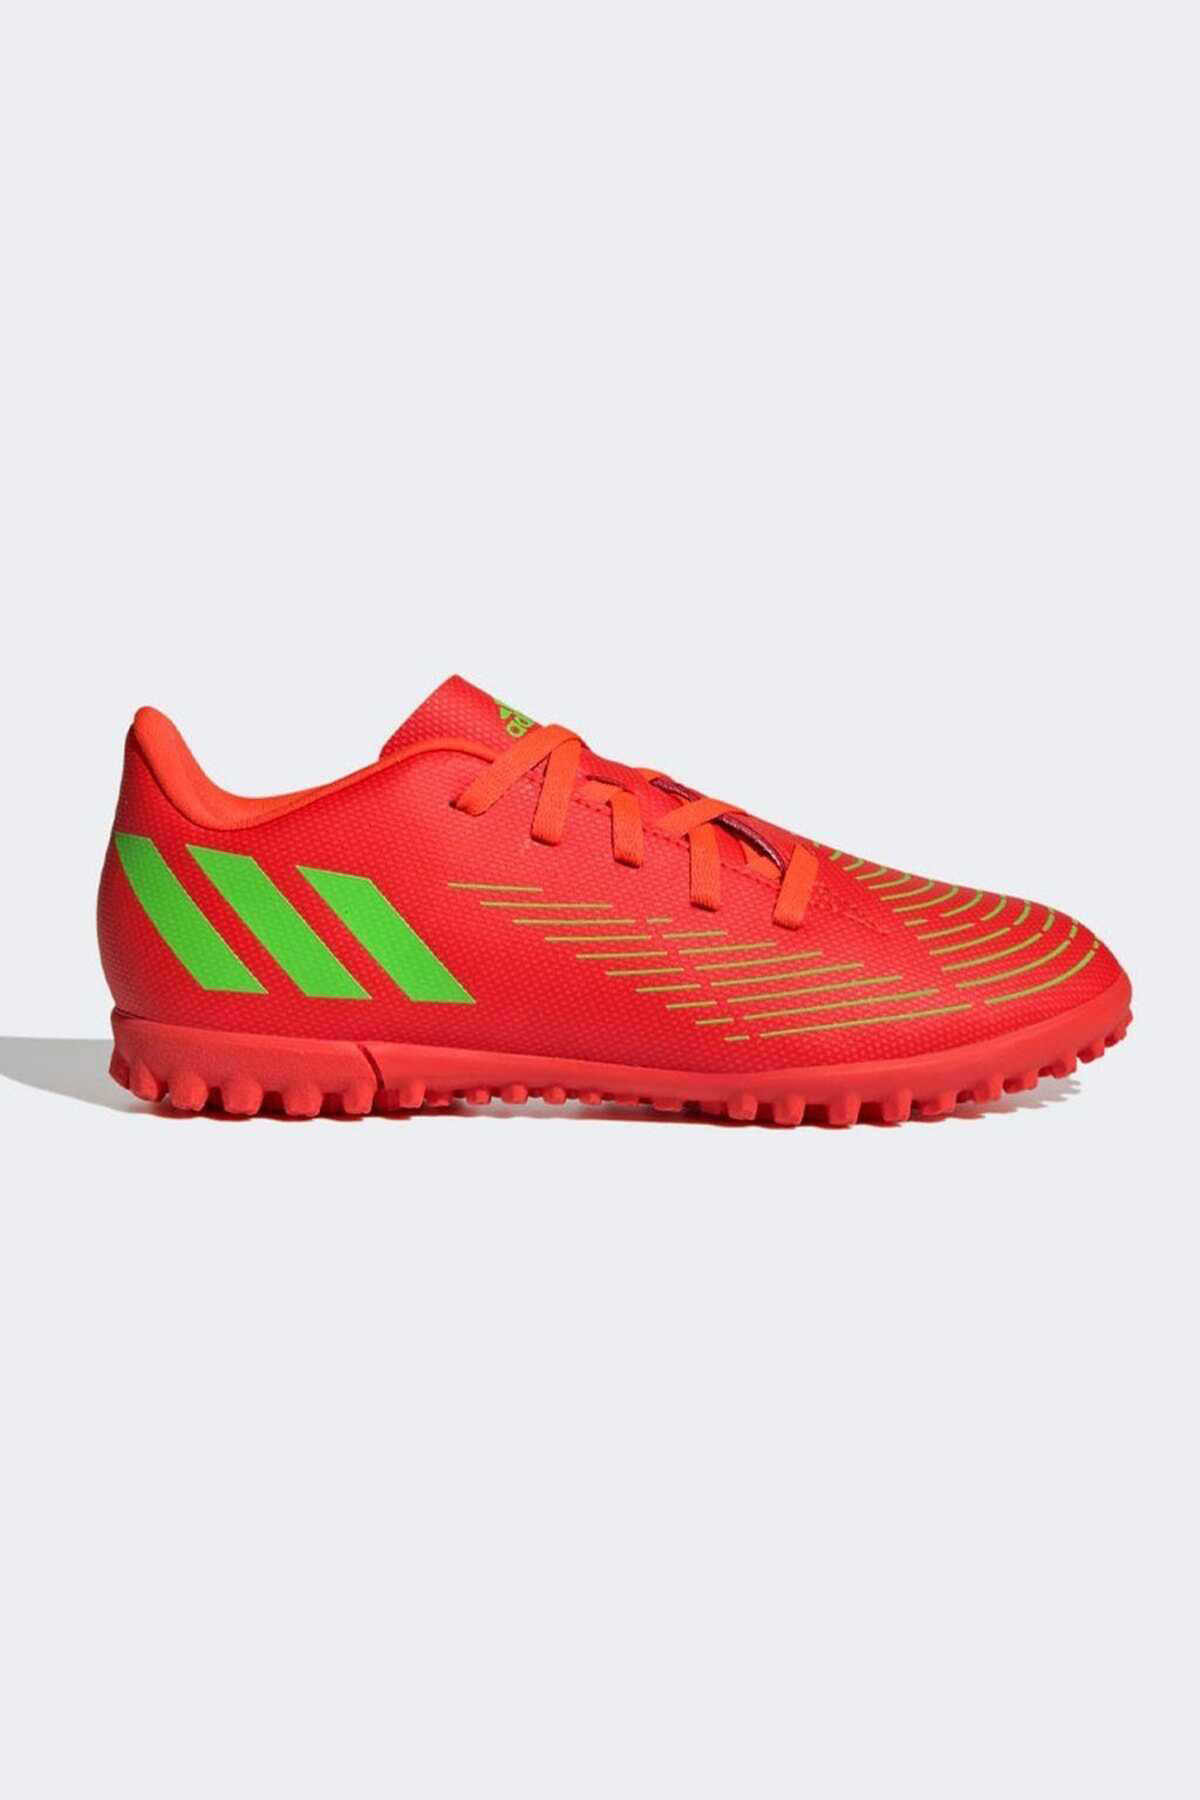 کفش استوک چمن مصنوعی پسرانه قرمز مدل Gv8495 برند adidas 